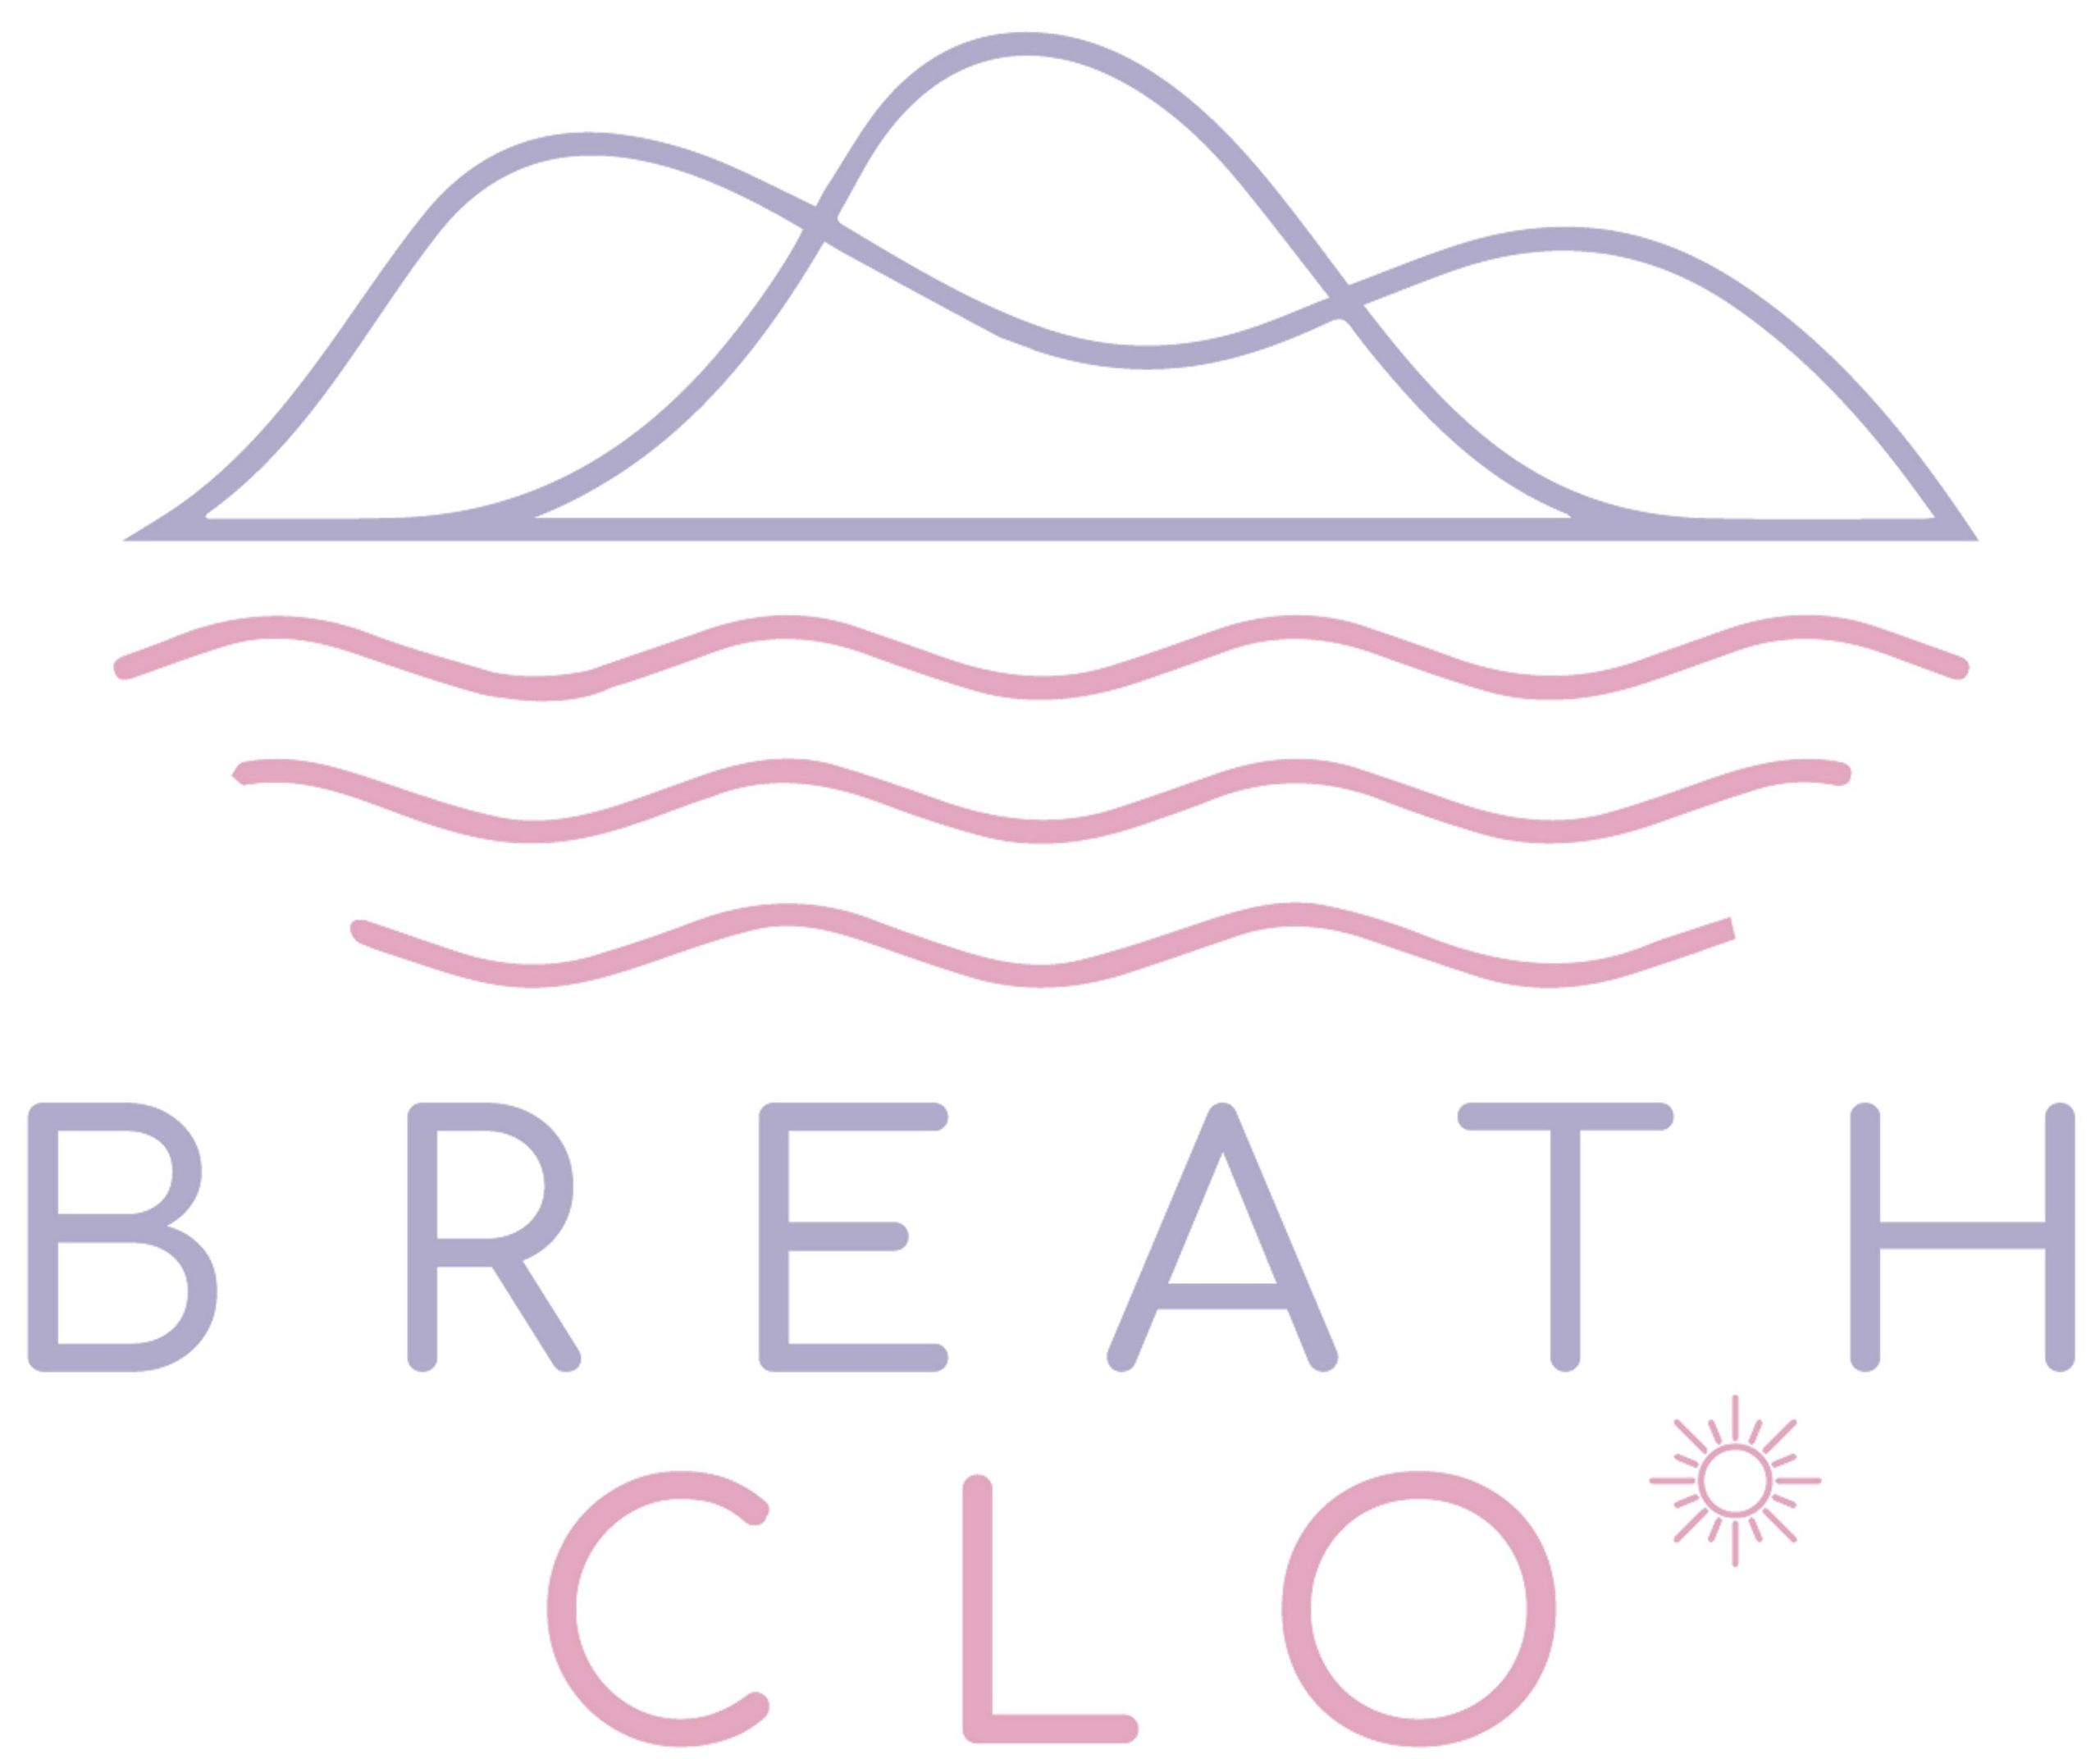 Breath Clo